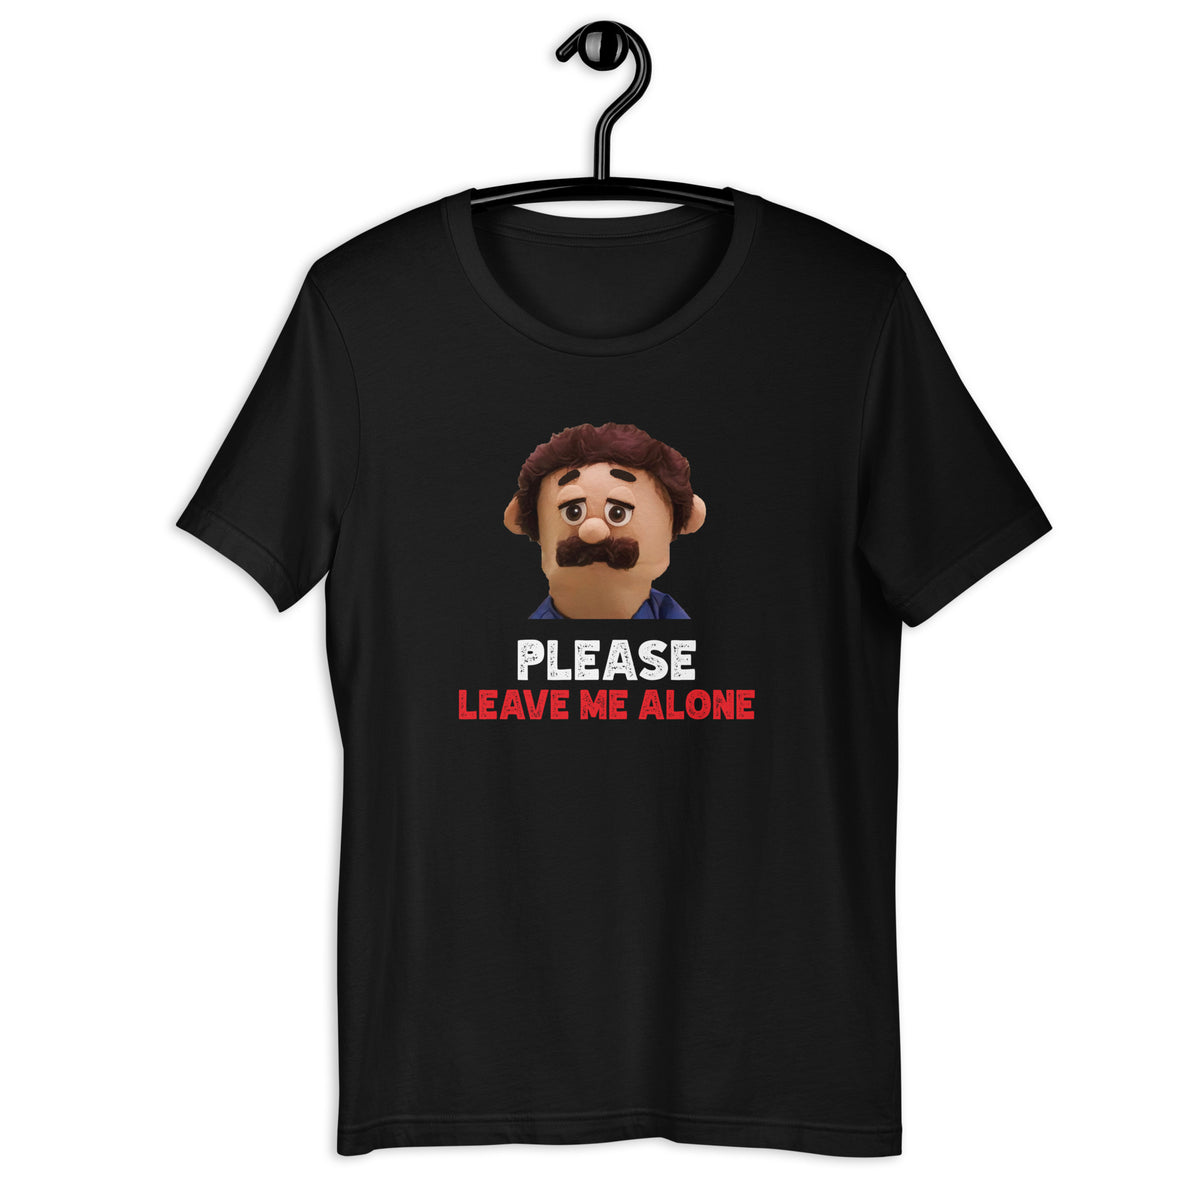 Please Leave me alone t-shirt - SHOPNOO